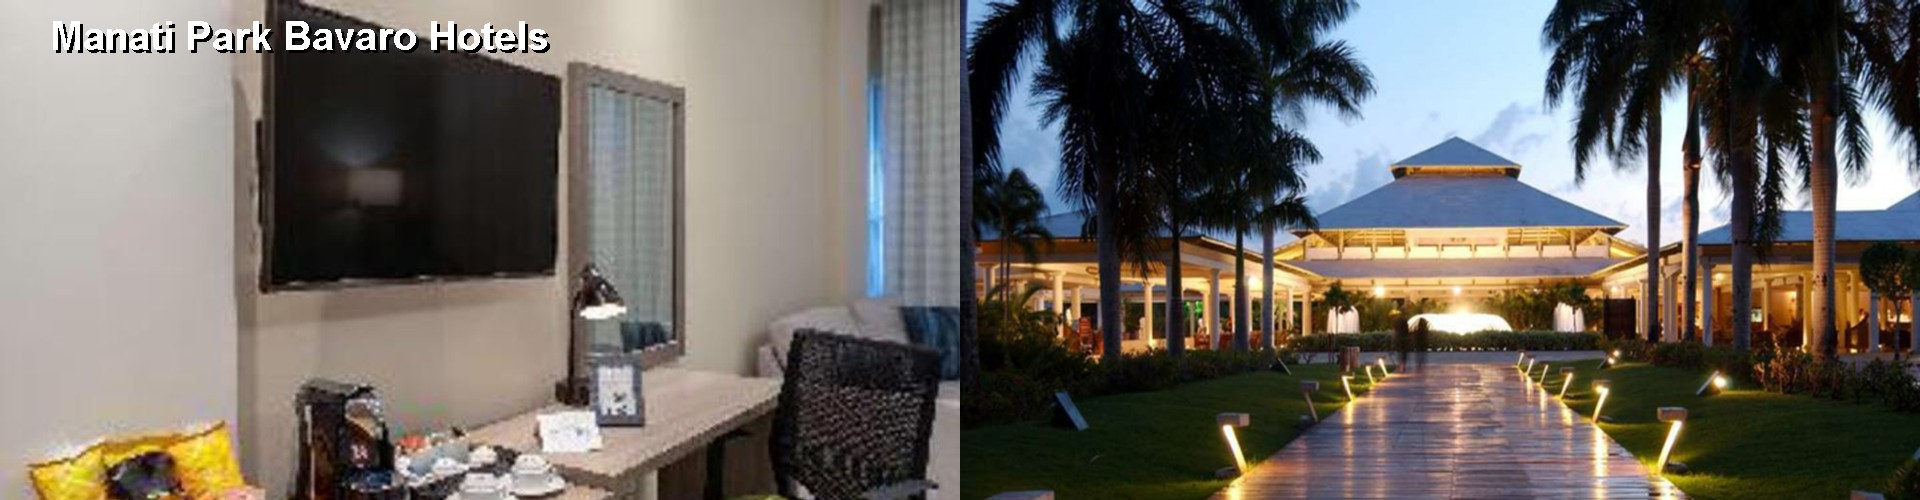 5 Best Hotels near Manati Park Bavaro